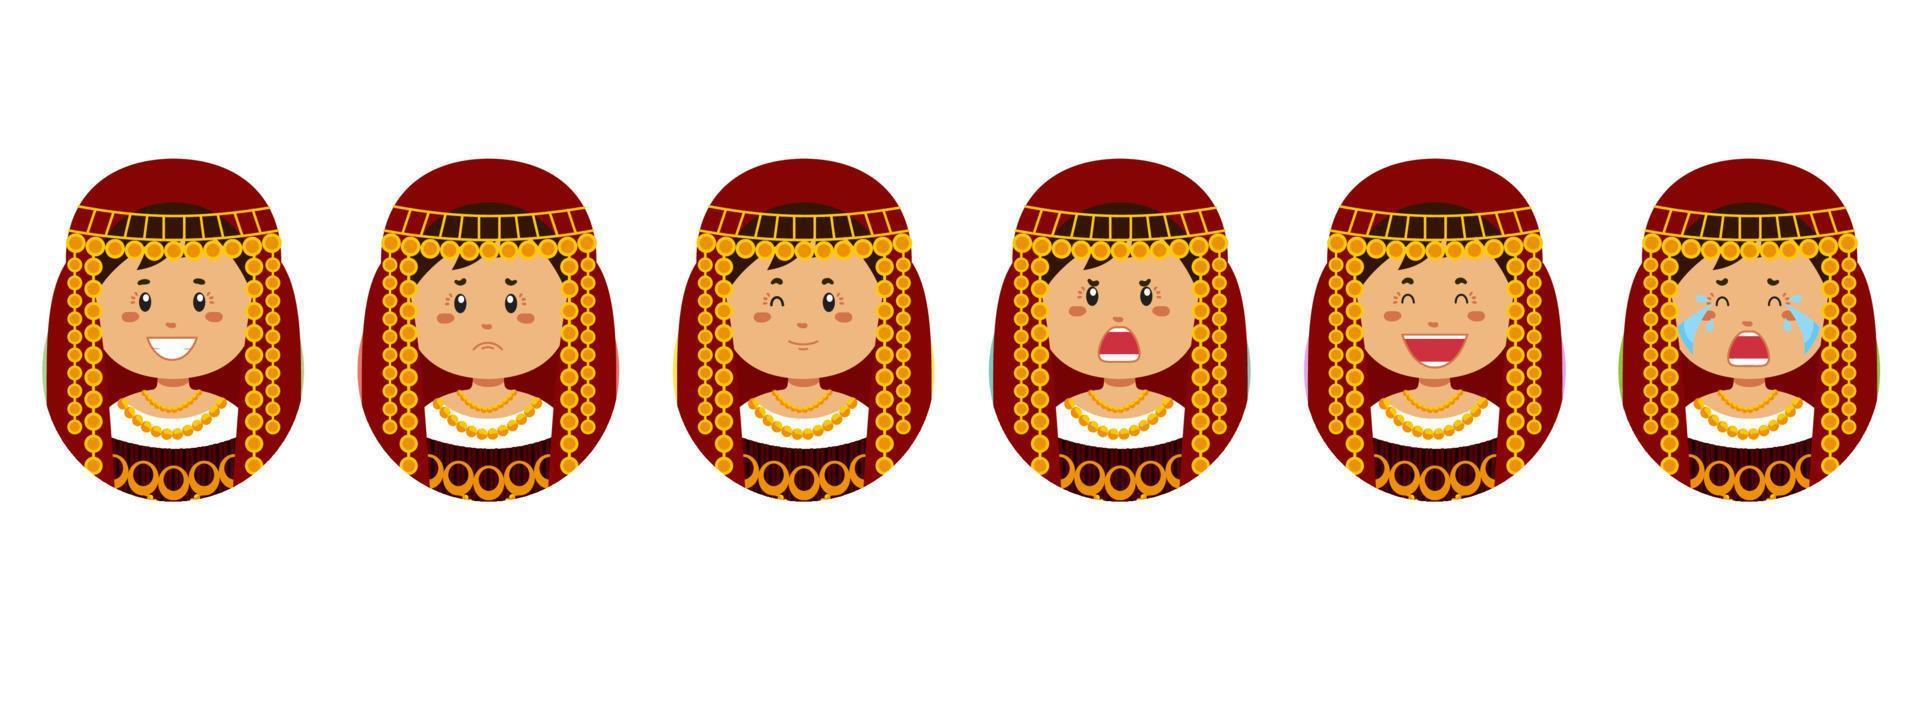 Tunesische avatar met verschillende uitdrukkingen vector